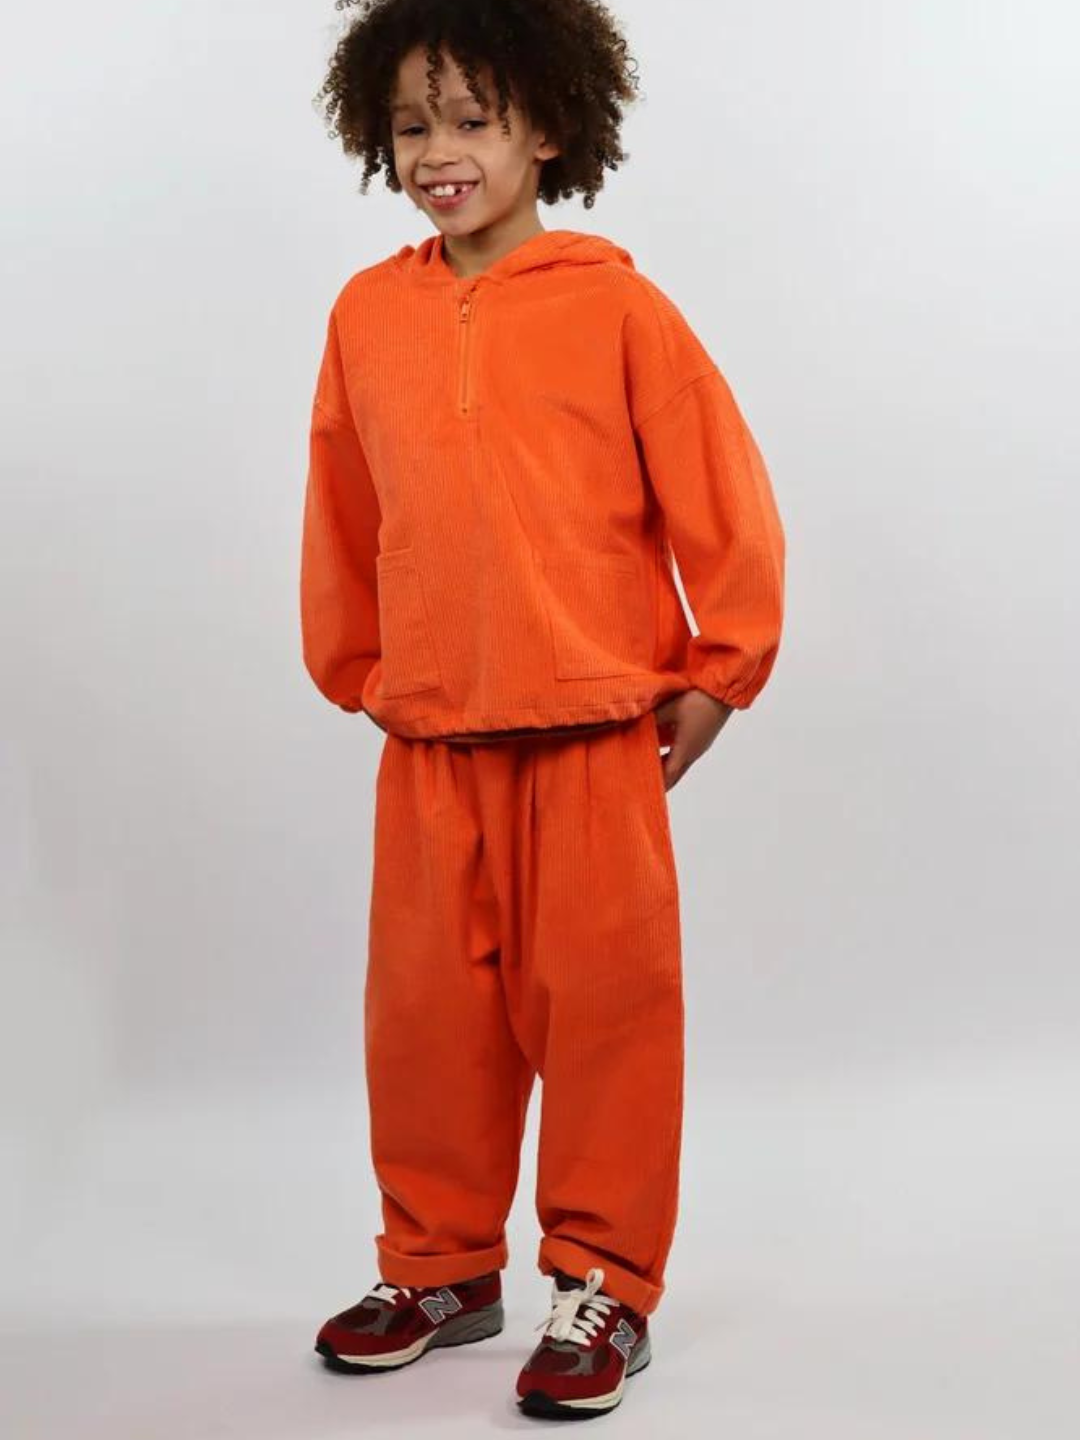 Orange | Child wearing orange kids' hooded smock and pants